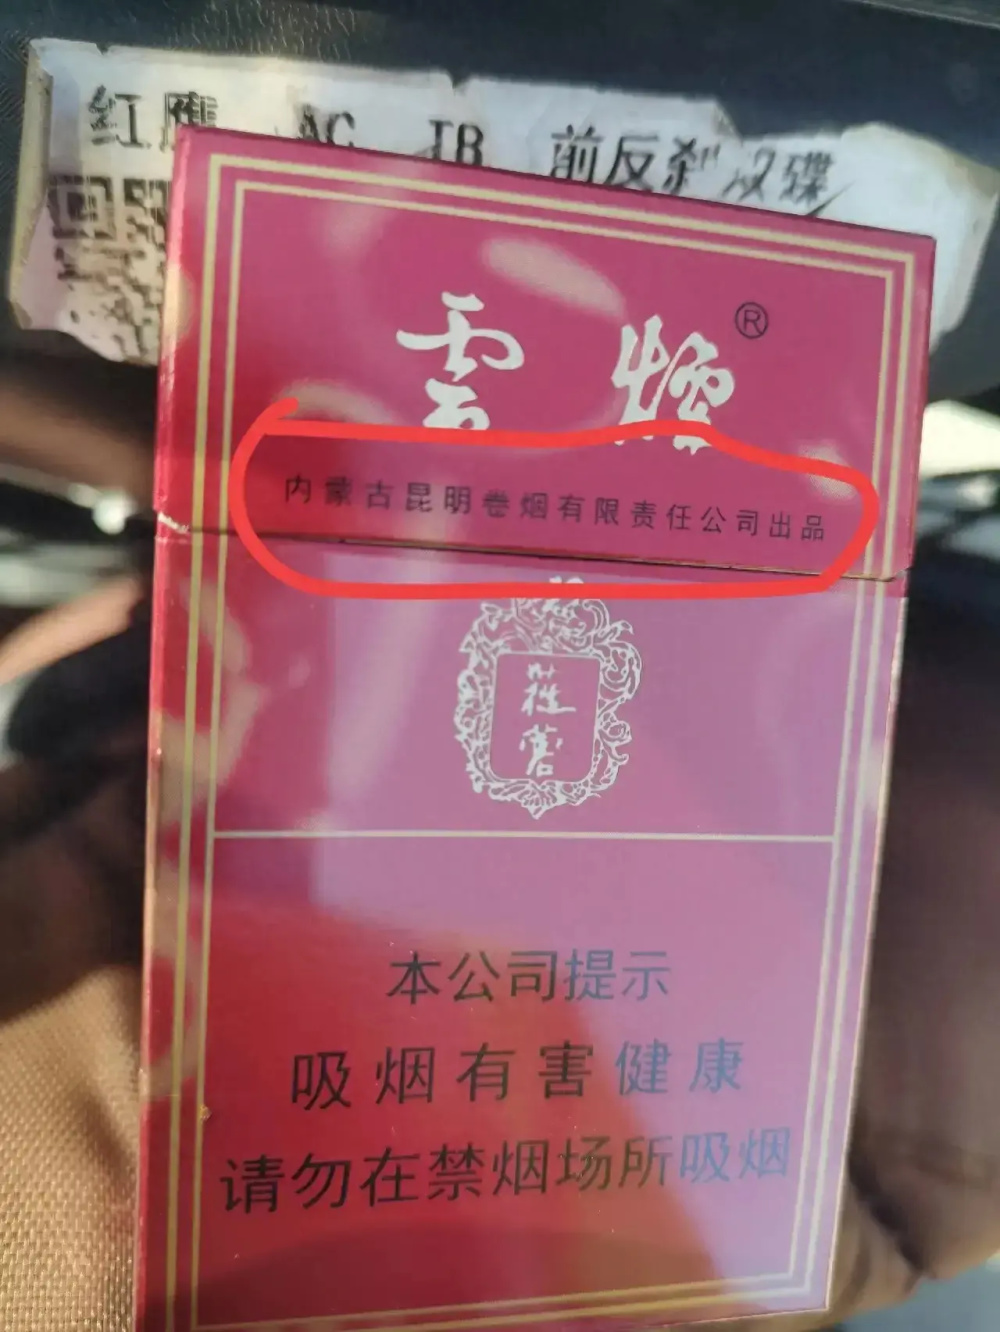 云南昆明现身外省产香烟包装盒初看不伦不类 烟民百思不得其解引起